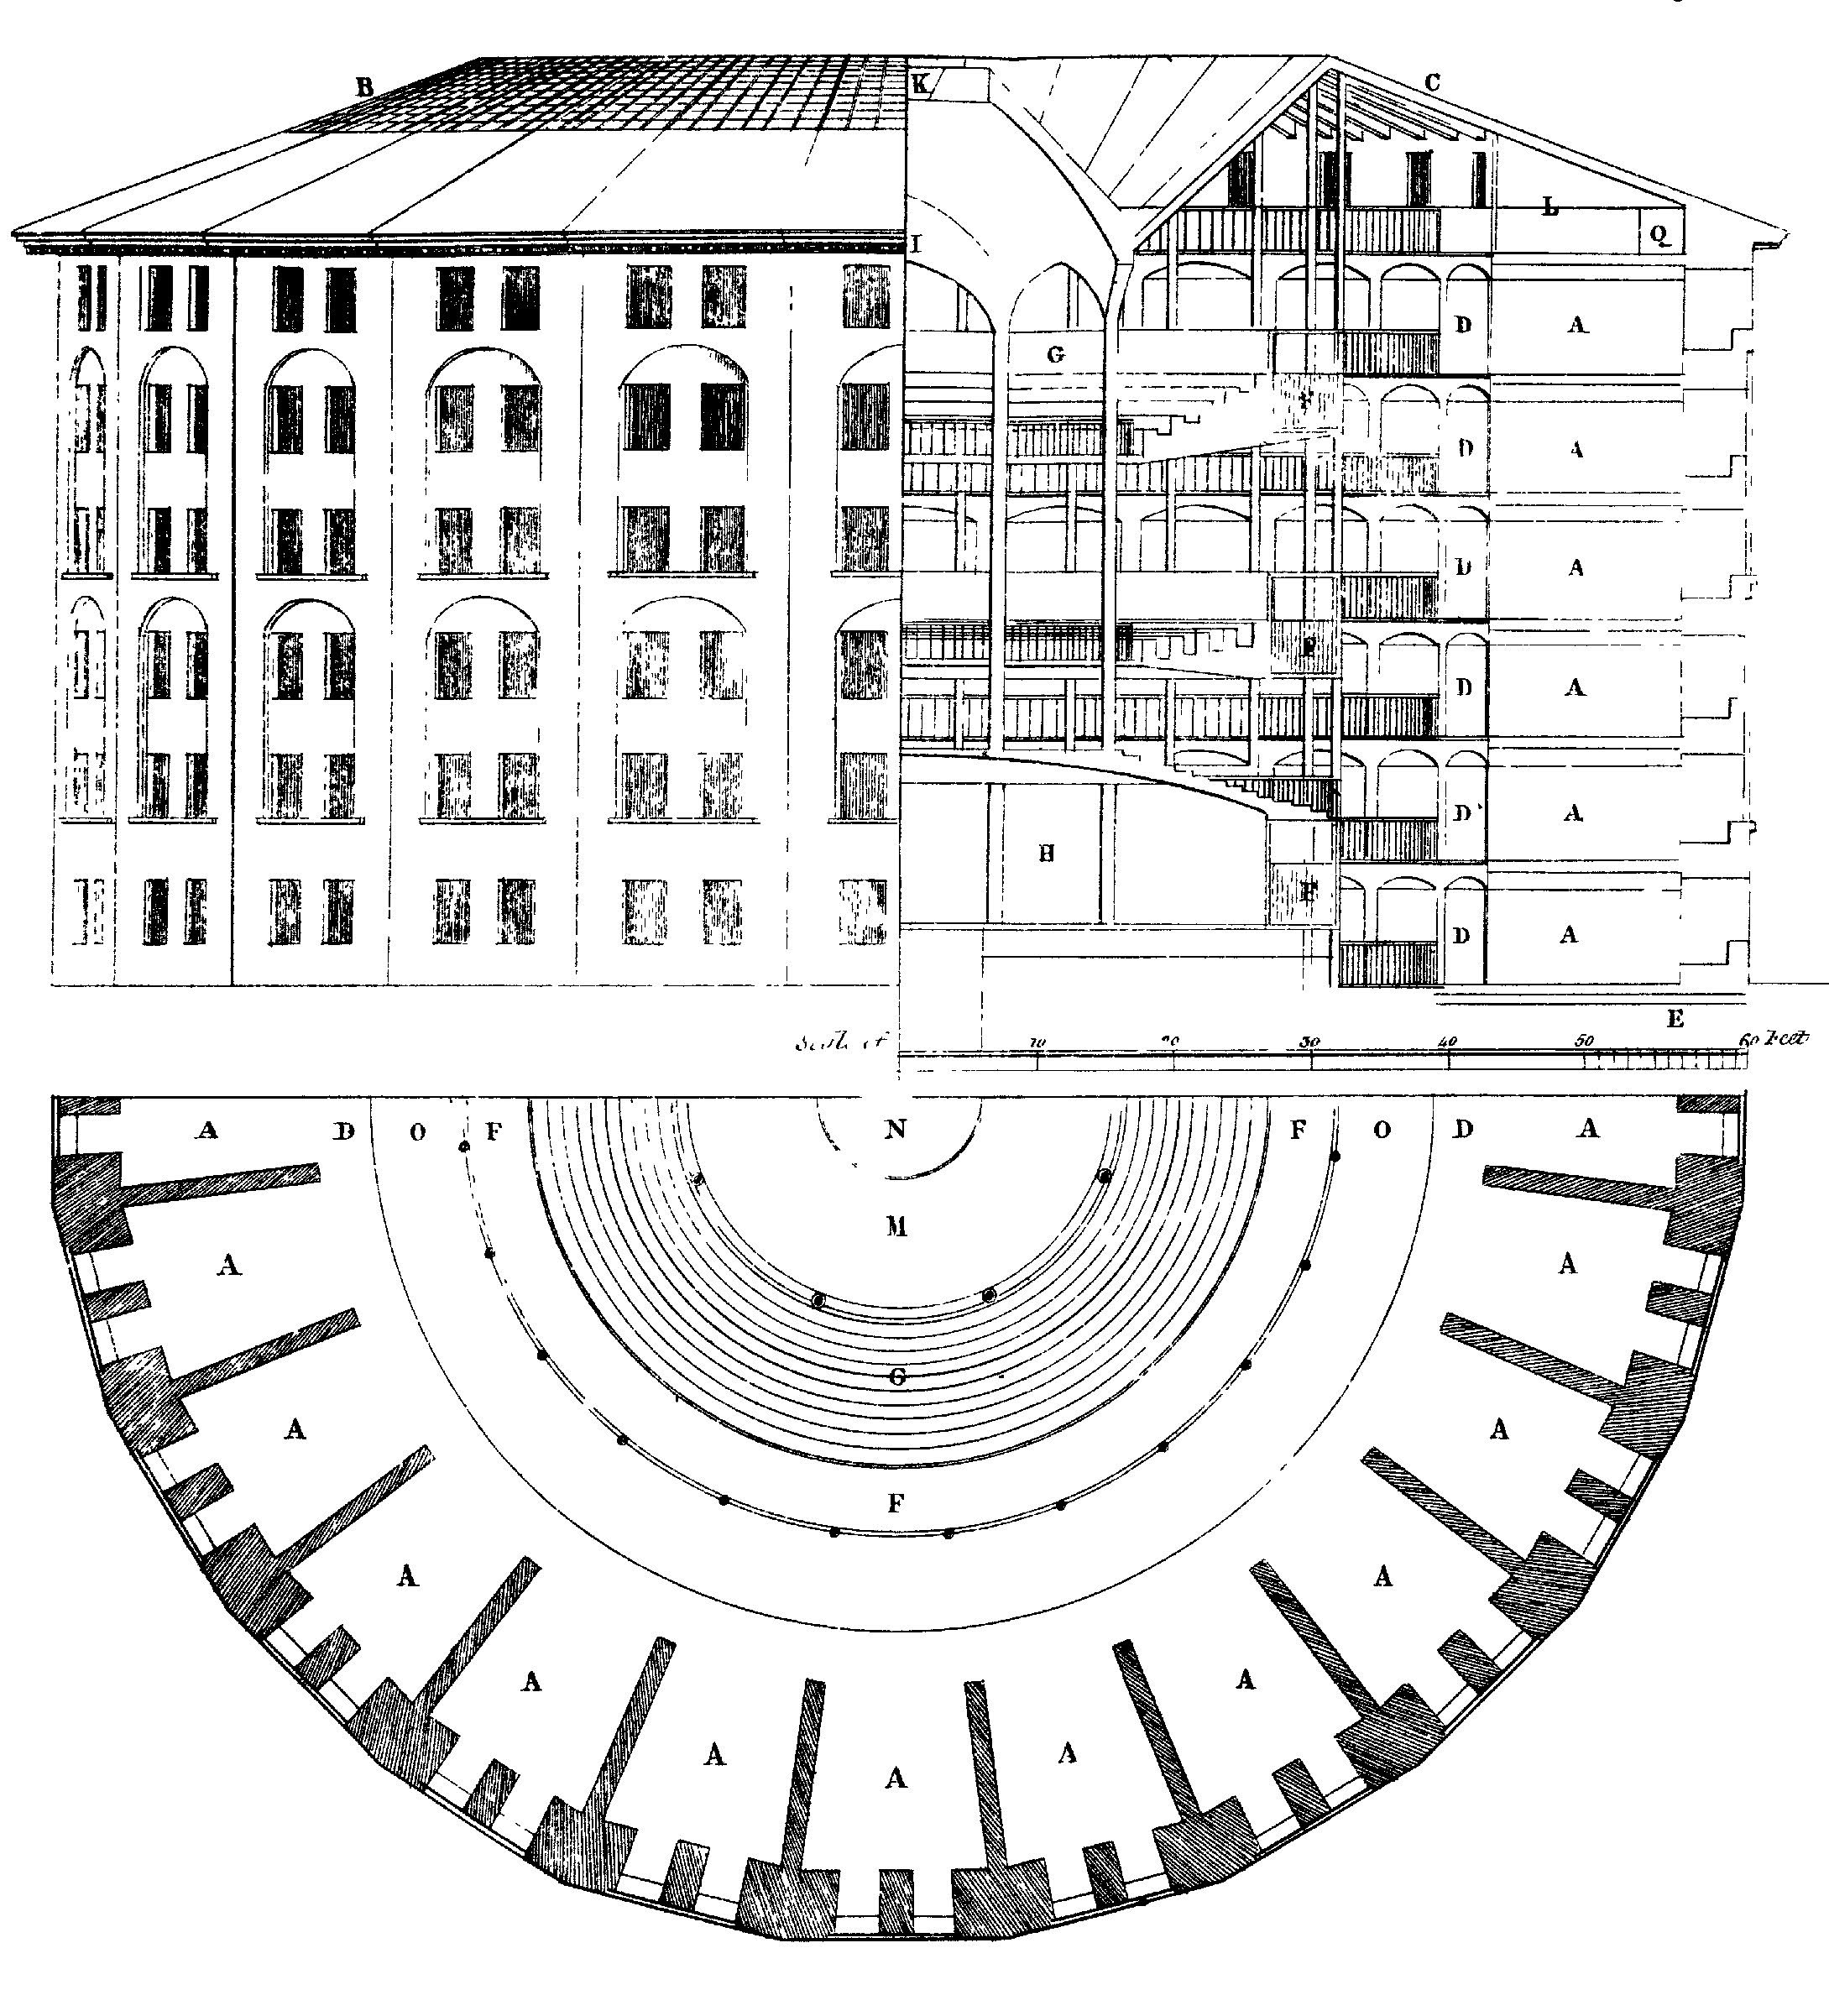 Figuur 6.3: Ontwerp voor de panopticon-gevangenis, voor het eerst voorgesteld door Jeremy Bentham. In het midden is er een onzichtbare ziener die het gedrag van iedereen kan waarnemen, maar niet kan worden waargenomen. Tekening door Willey Reveley, 1791 (Bron: Wikimedia Commons).